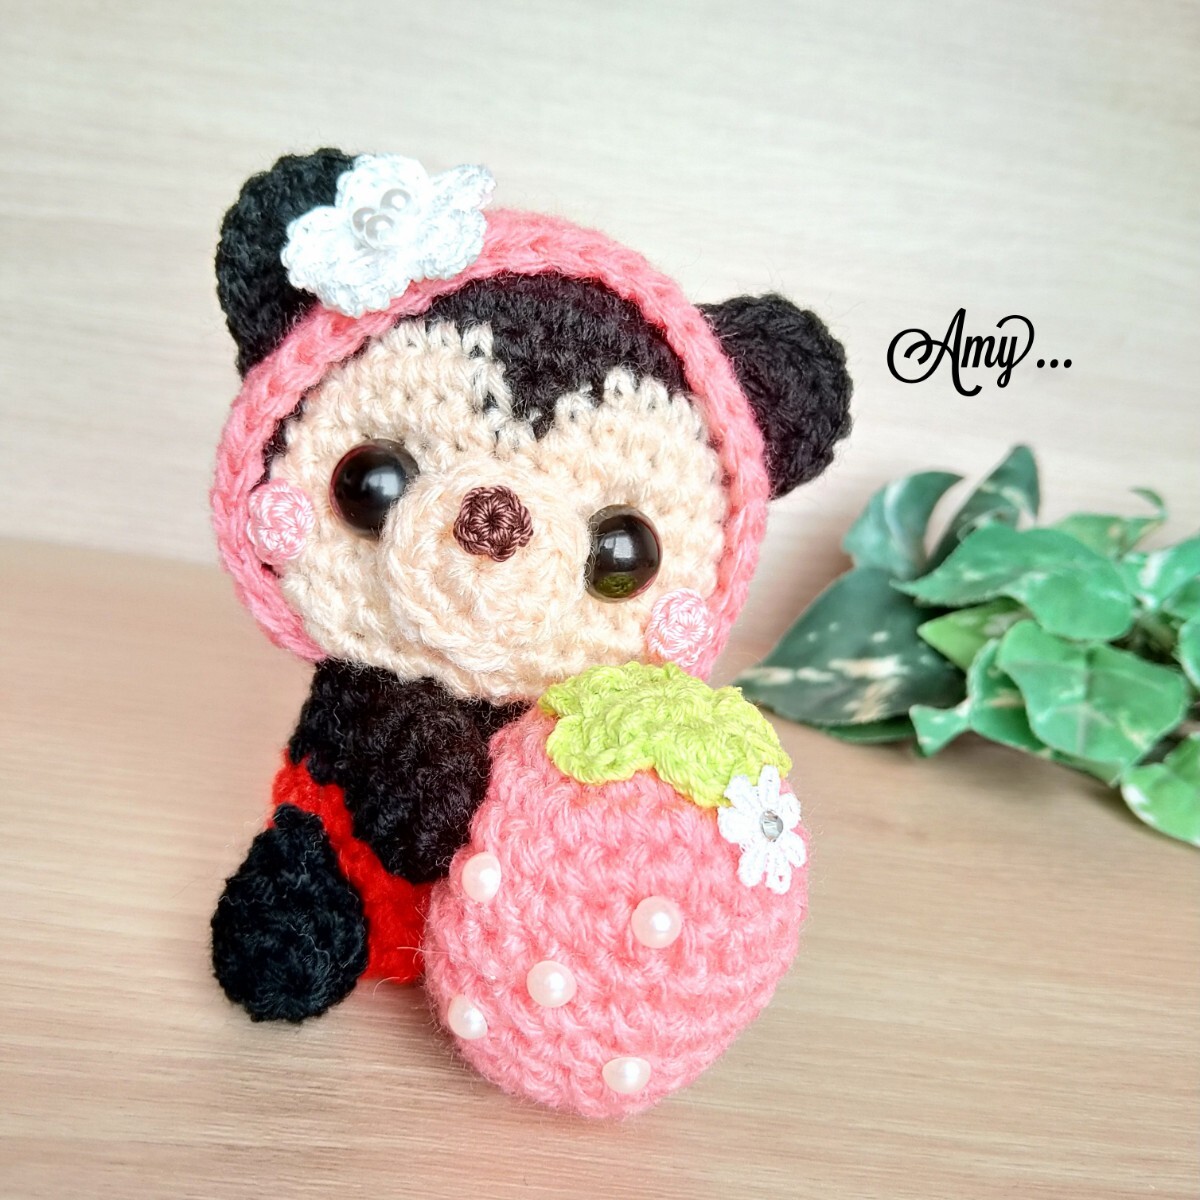 ■Amy... Amigurumi Plump Pearl Strawberry Hug★Junge Kostenloser Versand handgefertigt♪, Spielzeug, Spiel, Plüschtier, Amigurumi